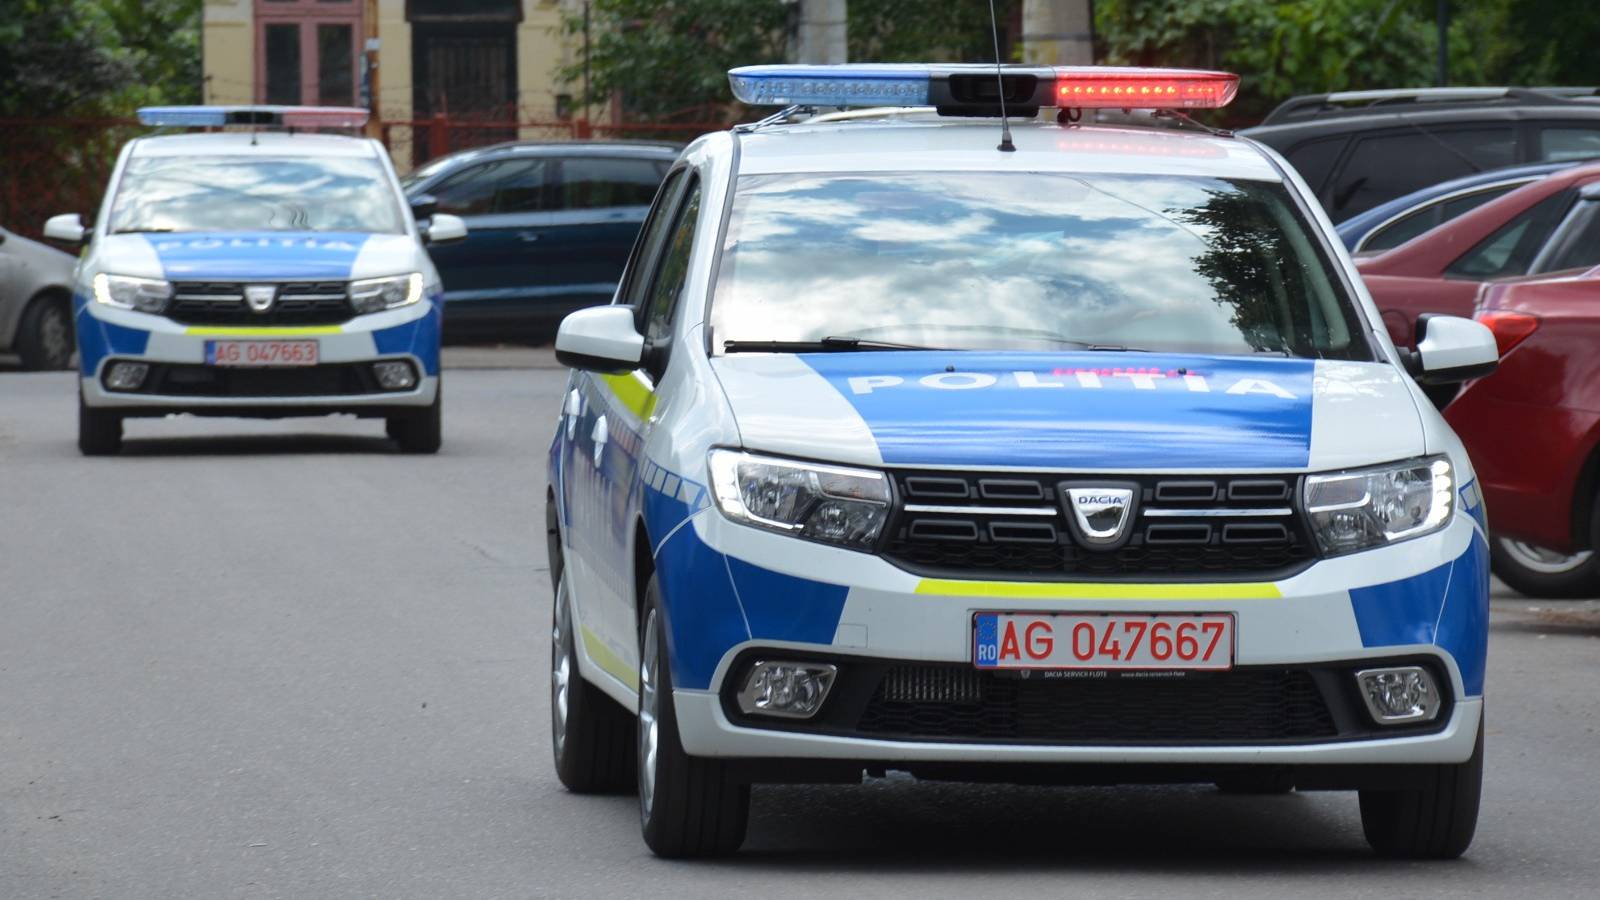 Advarsel rumænsk politi manglende overholdelse